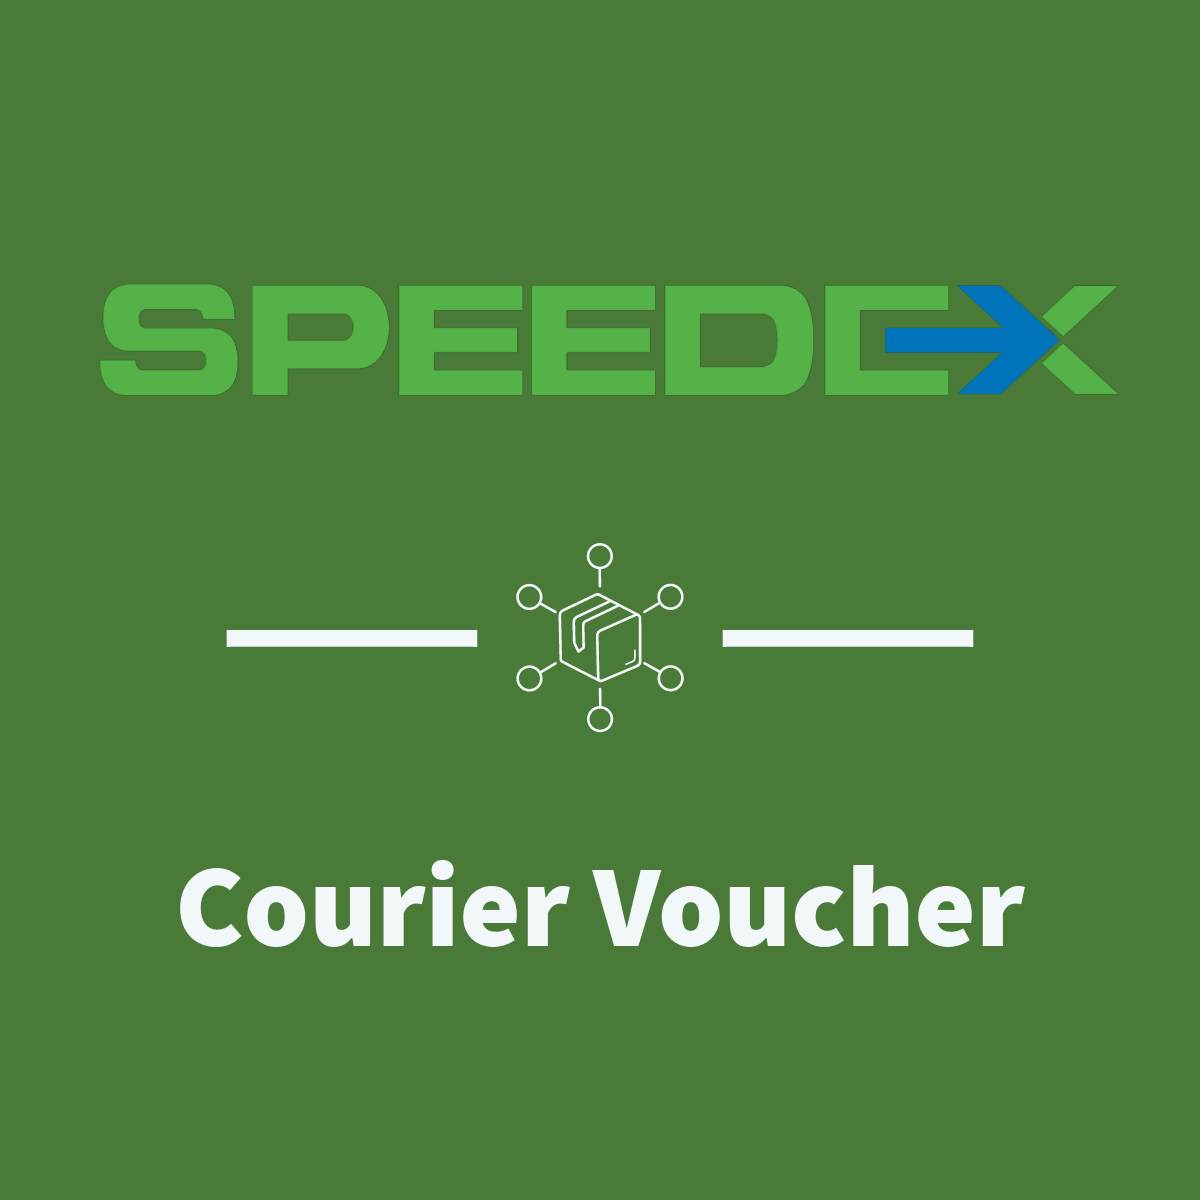 Speedex Courier Voucher for Shopify